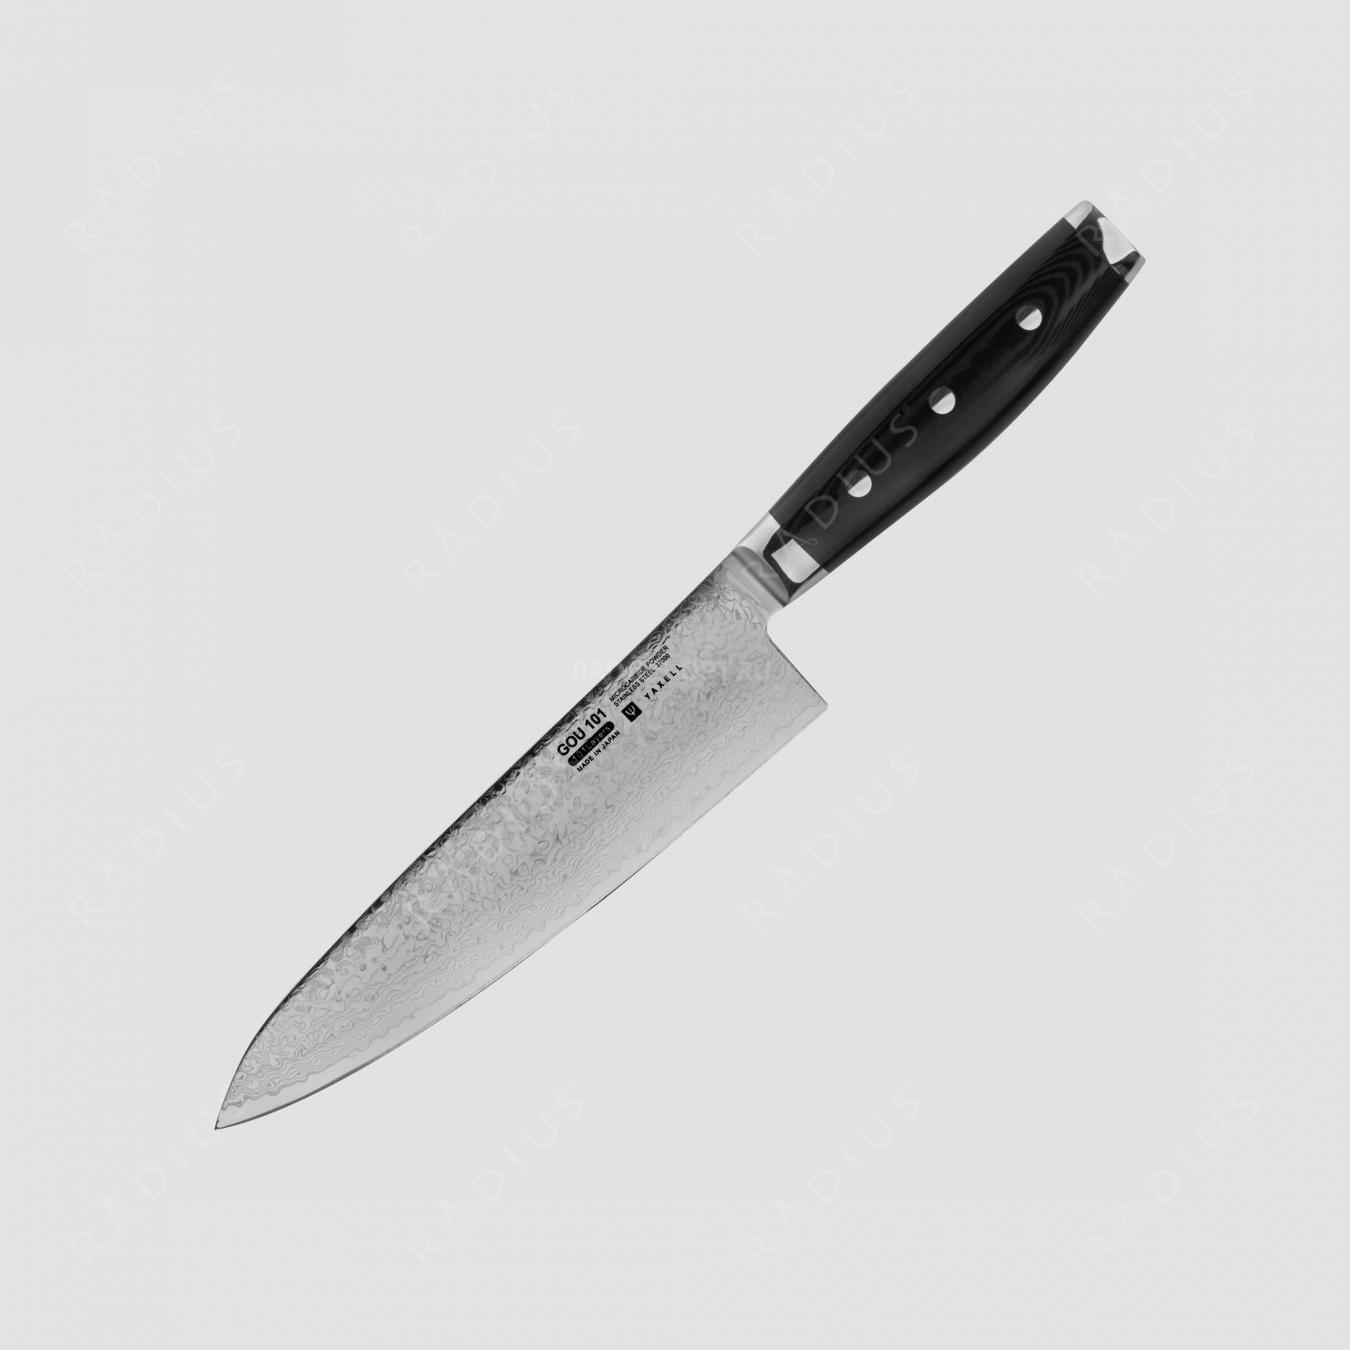 Профессиональный поварской кухонный нож 20 см, «Gyuto», дамасская сталь, серия Gou, YAXELL, Япония